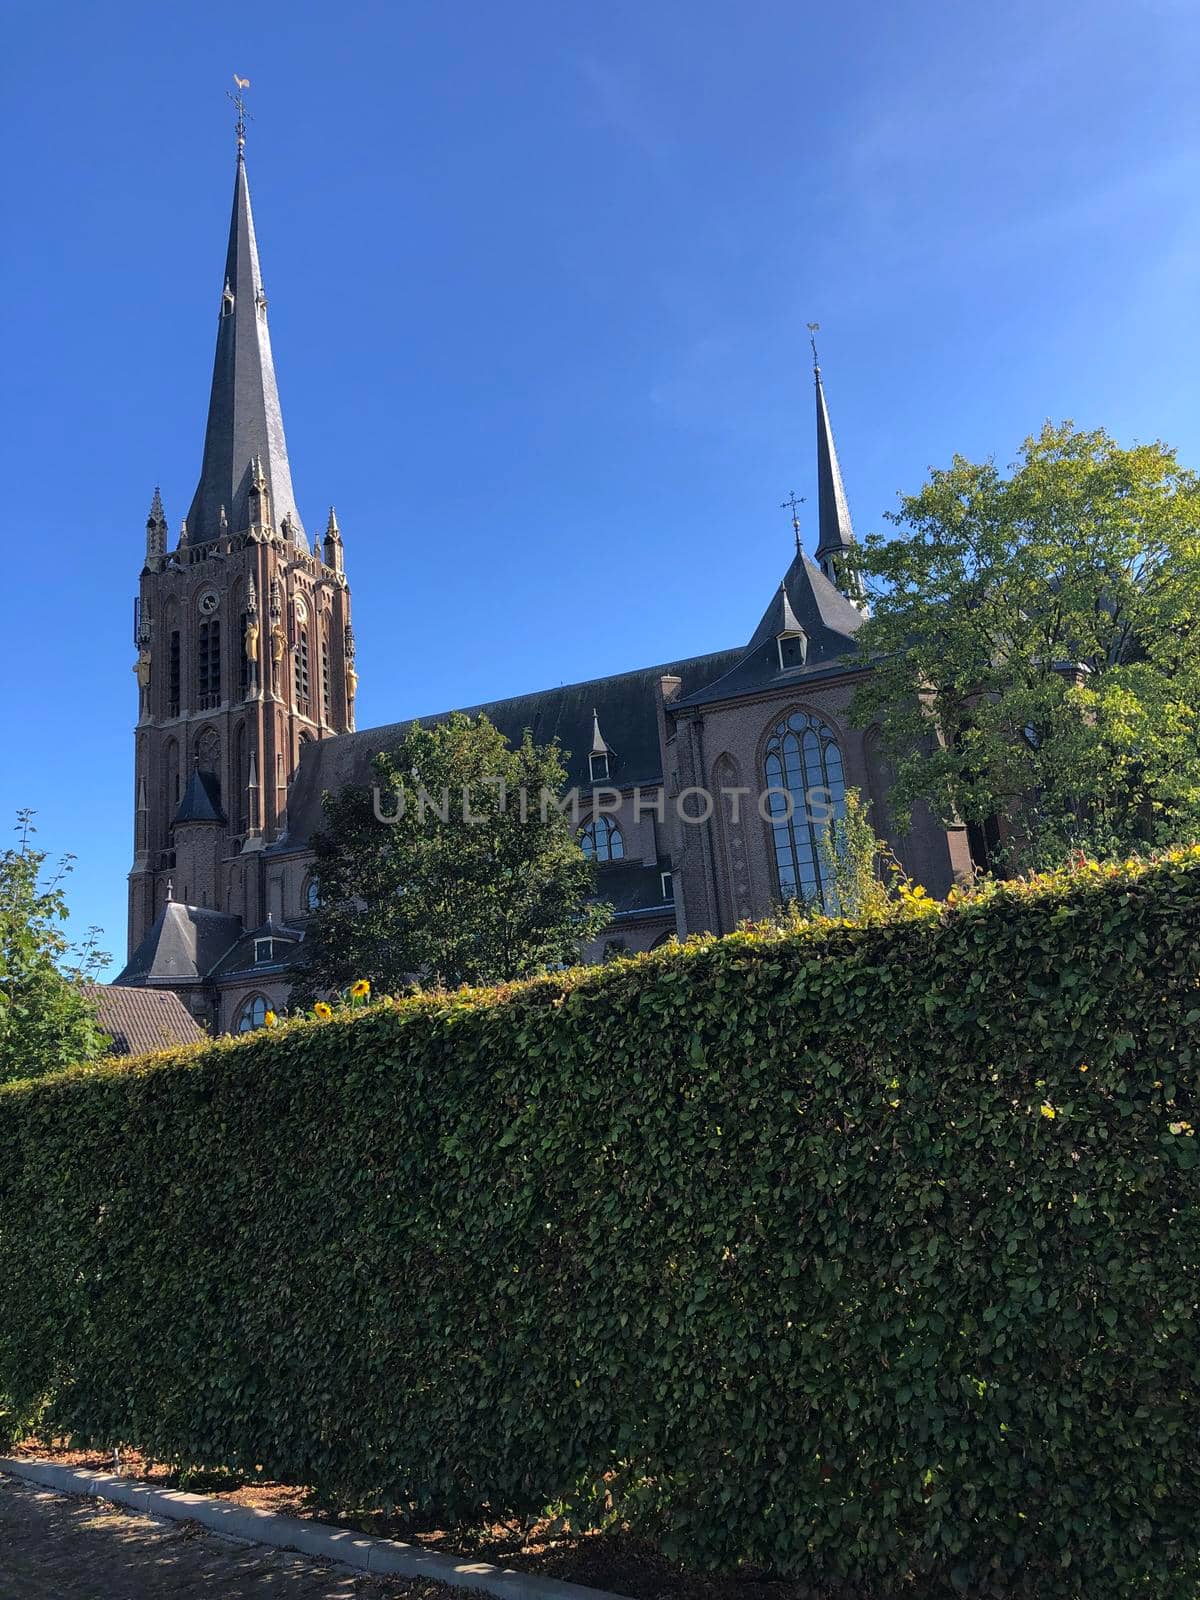 St. Werenfridus church in Zieuwent, The Netherlands